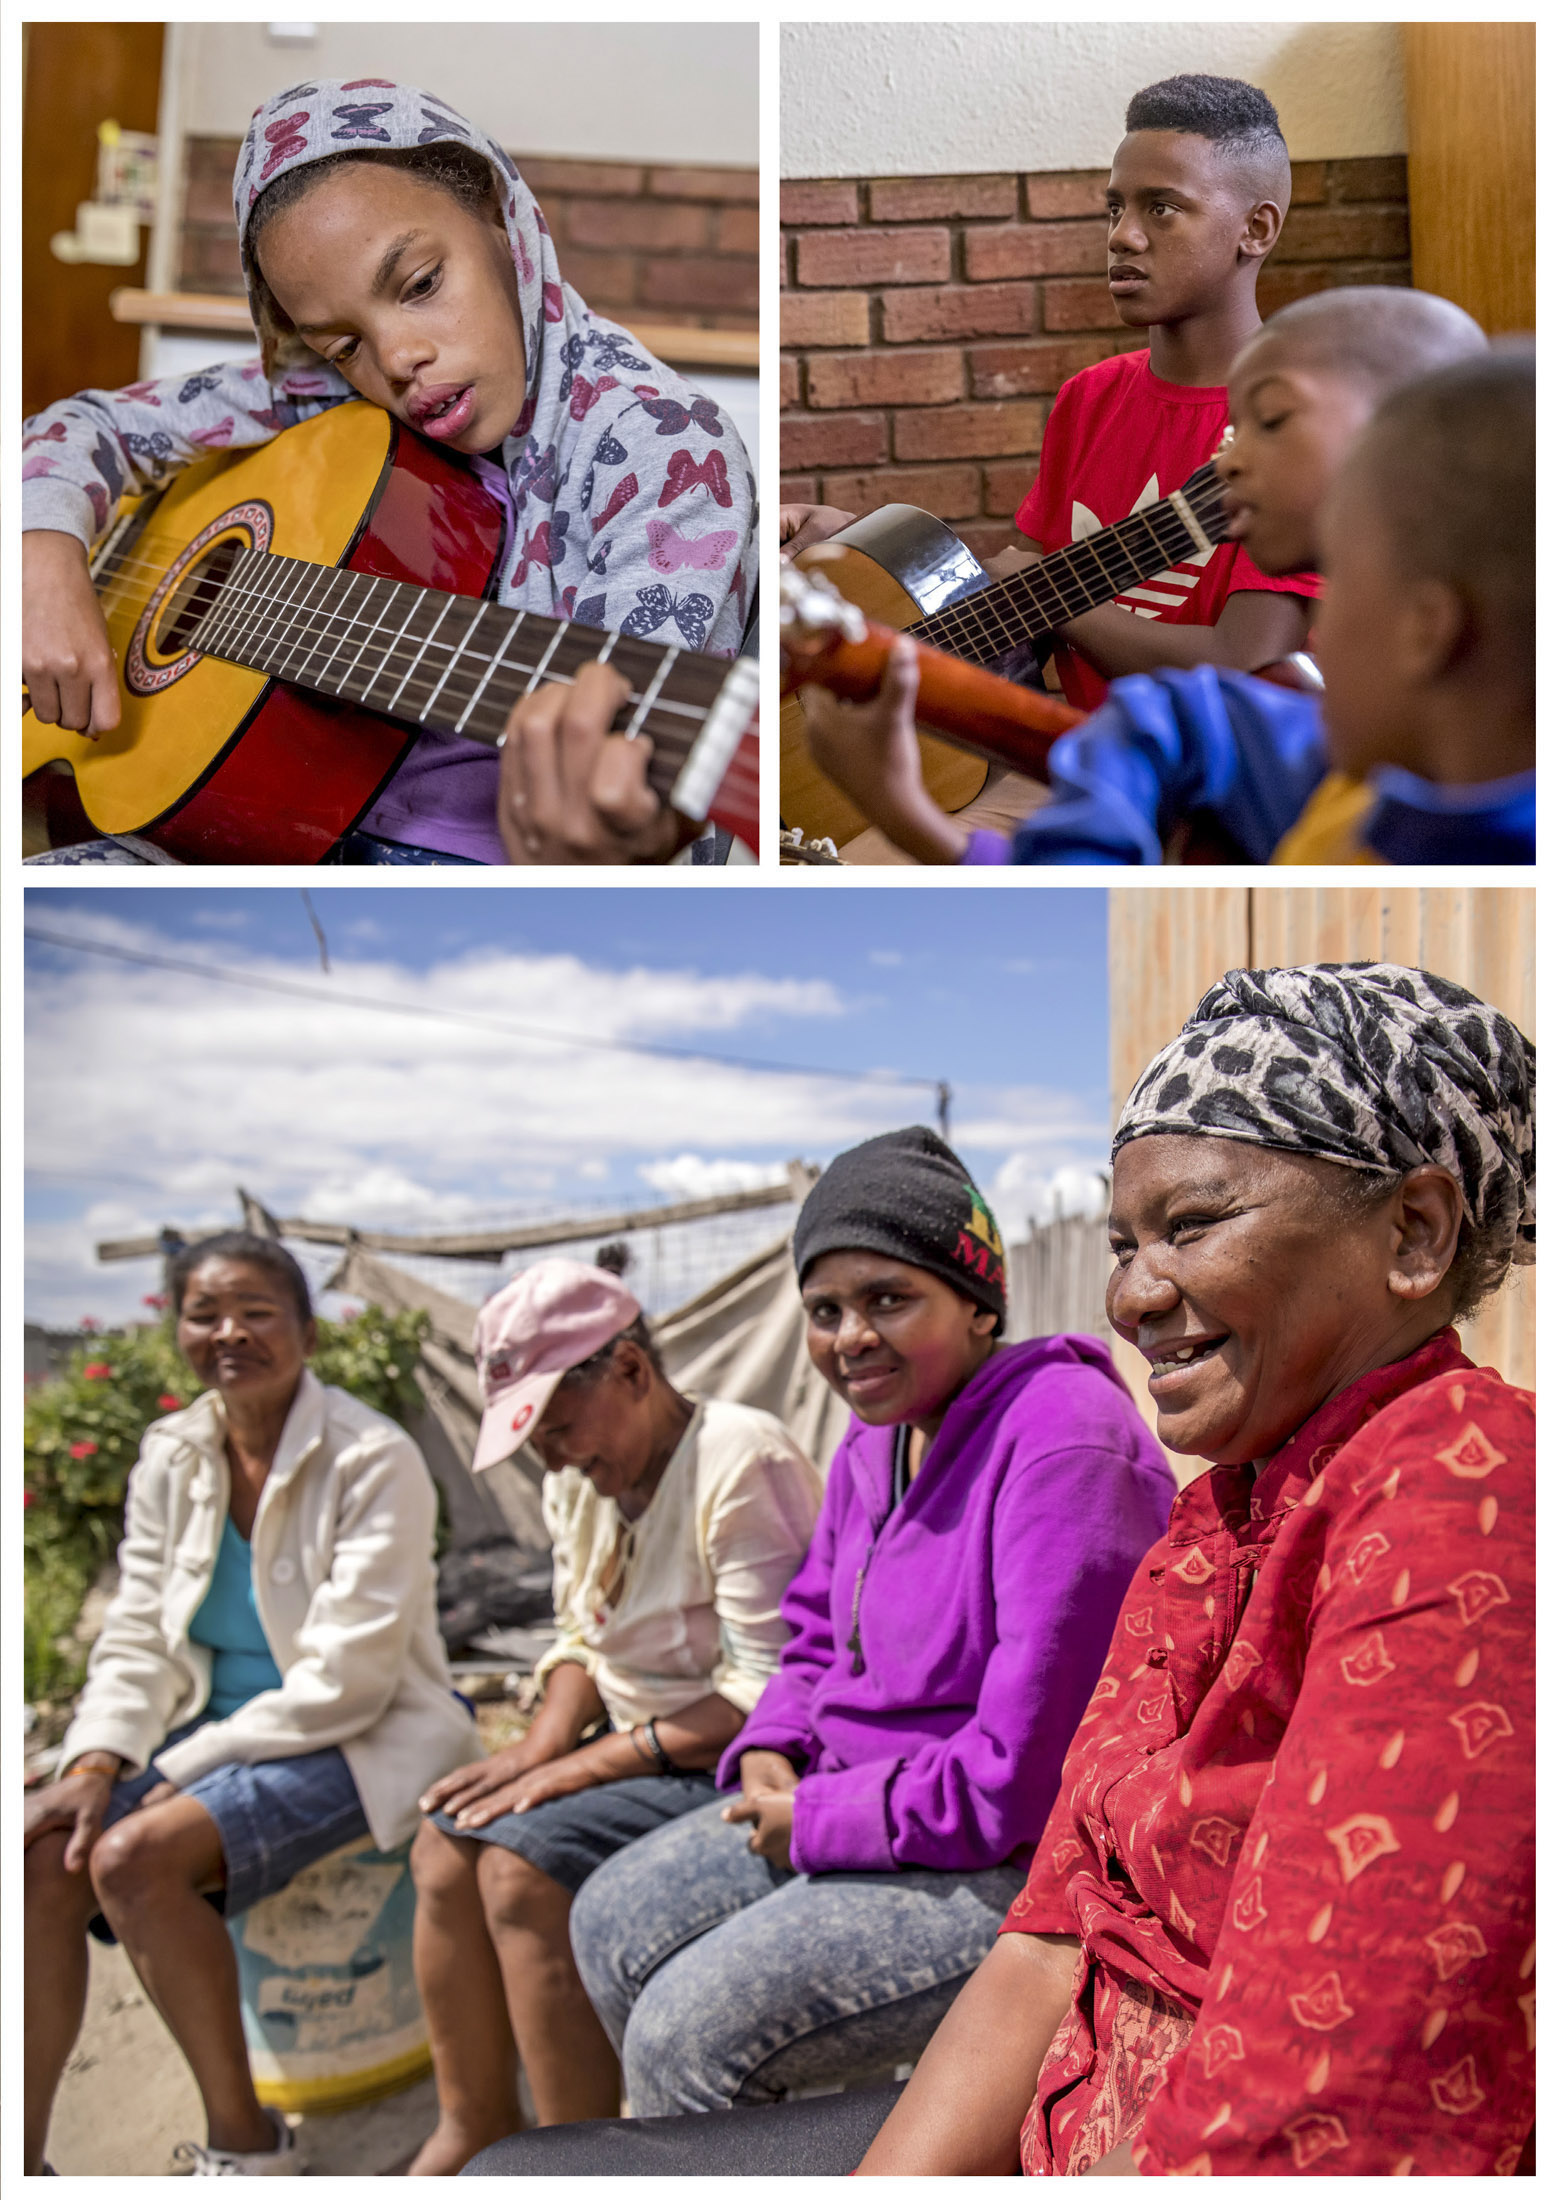 Eine Collage aus zwei Bildern: Oben ist eine Frau mit Kapuze zu sehen, die Gitarre spielt, im Hintergrund spielen zwei Jungen Gitarre. Unten sind vier Frauen zu sehen, die im Freien sitzen, lächeln und sich unterhalten. © Fotografie Tomas Rodriguez